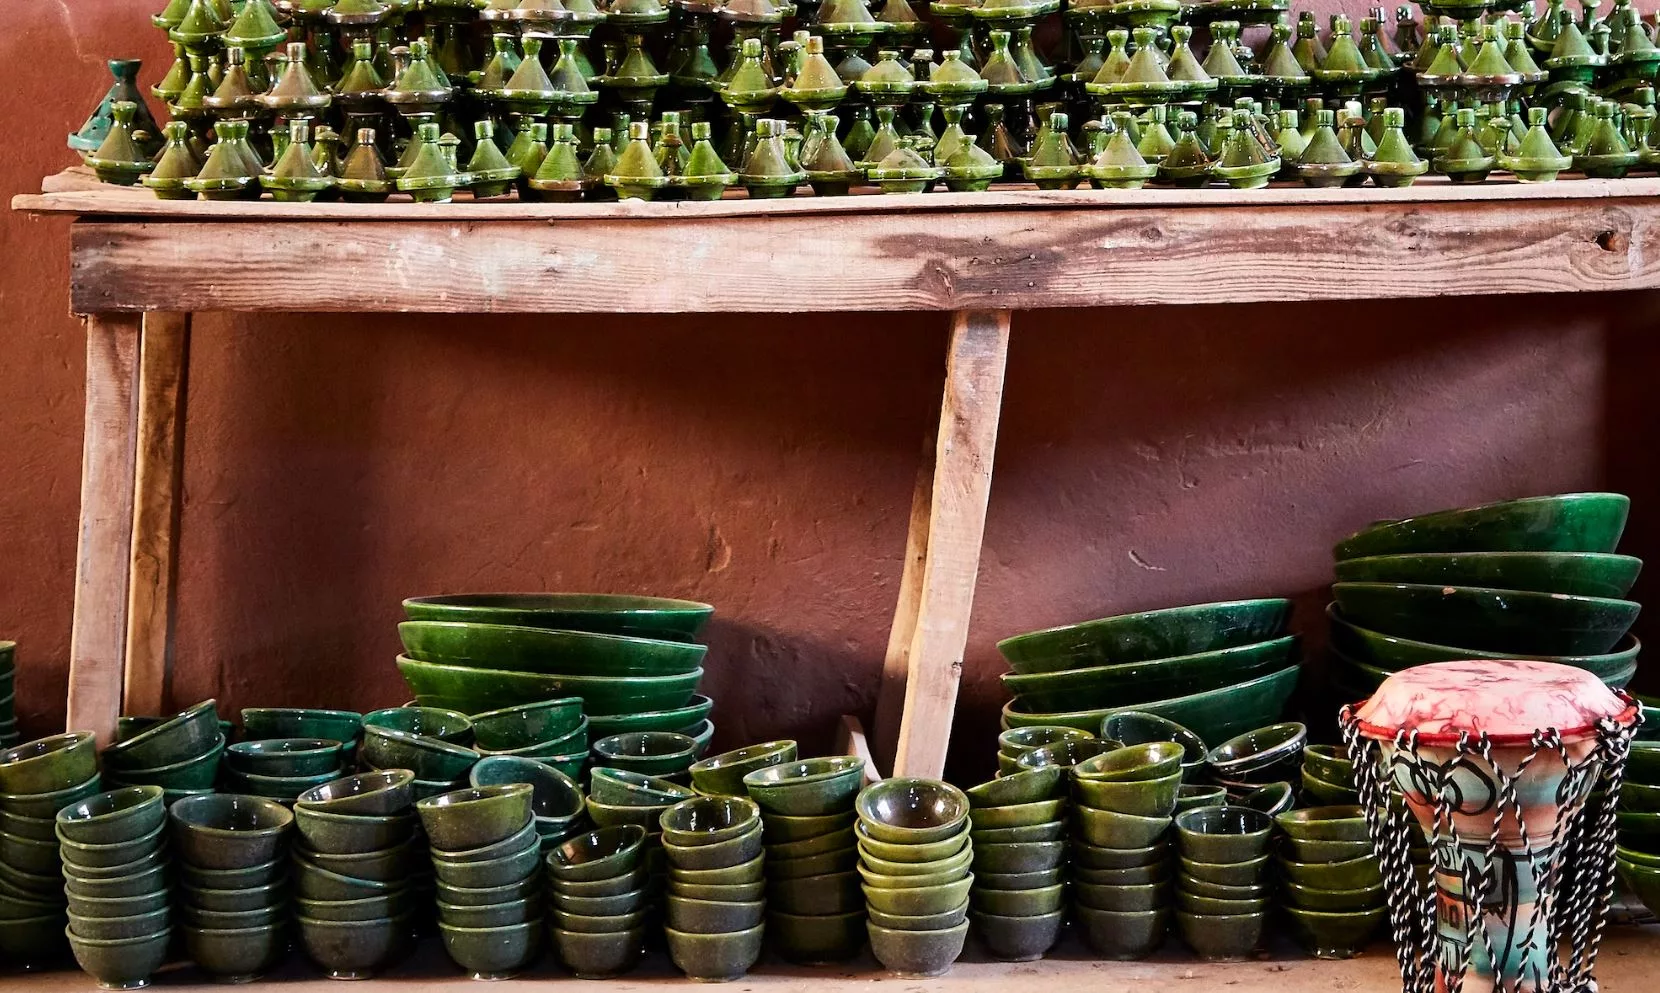 Poterie verte de Tamegroute : La céramique ethnique et bohème